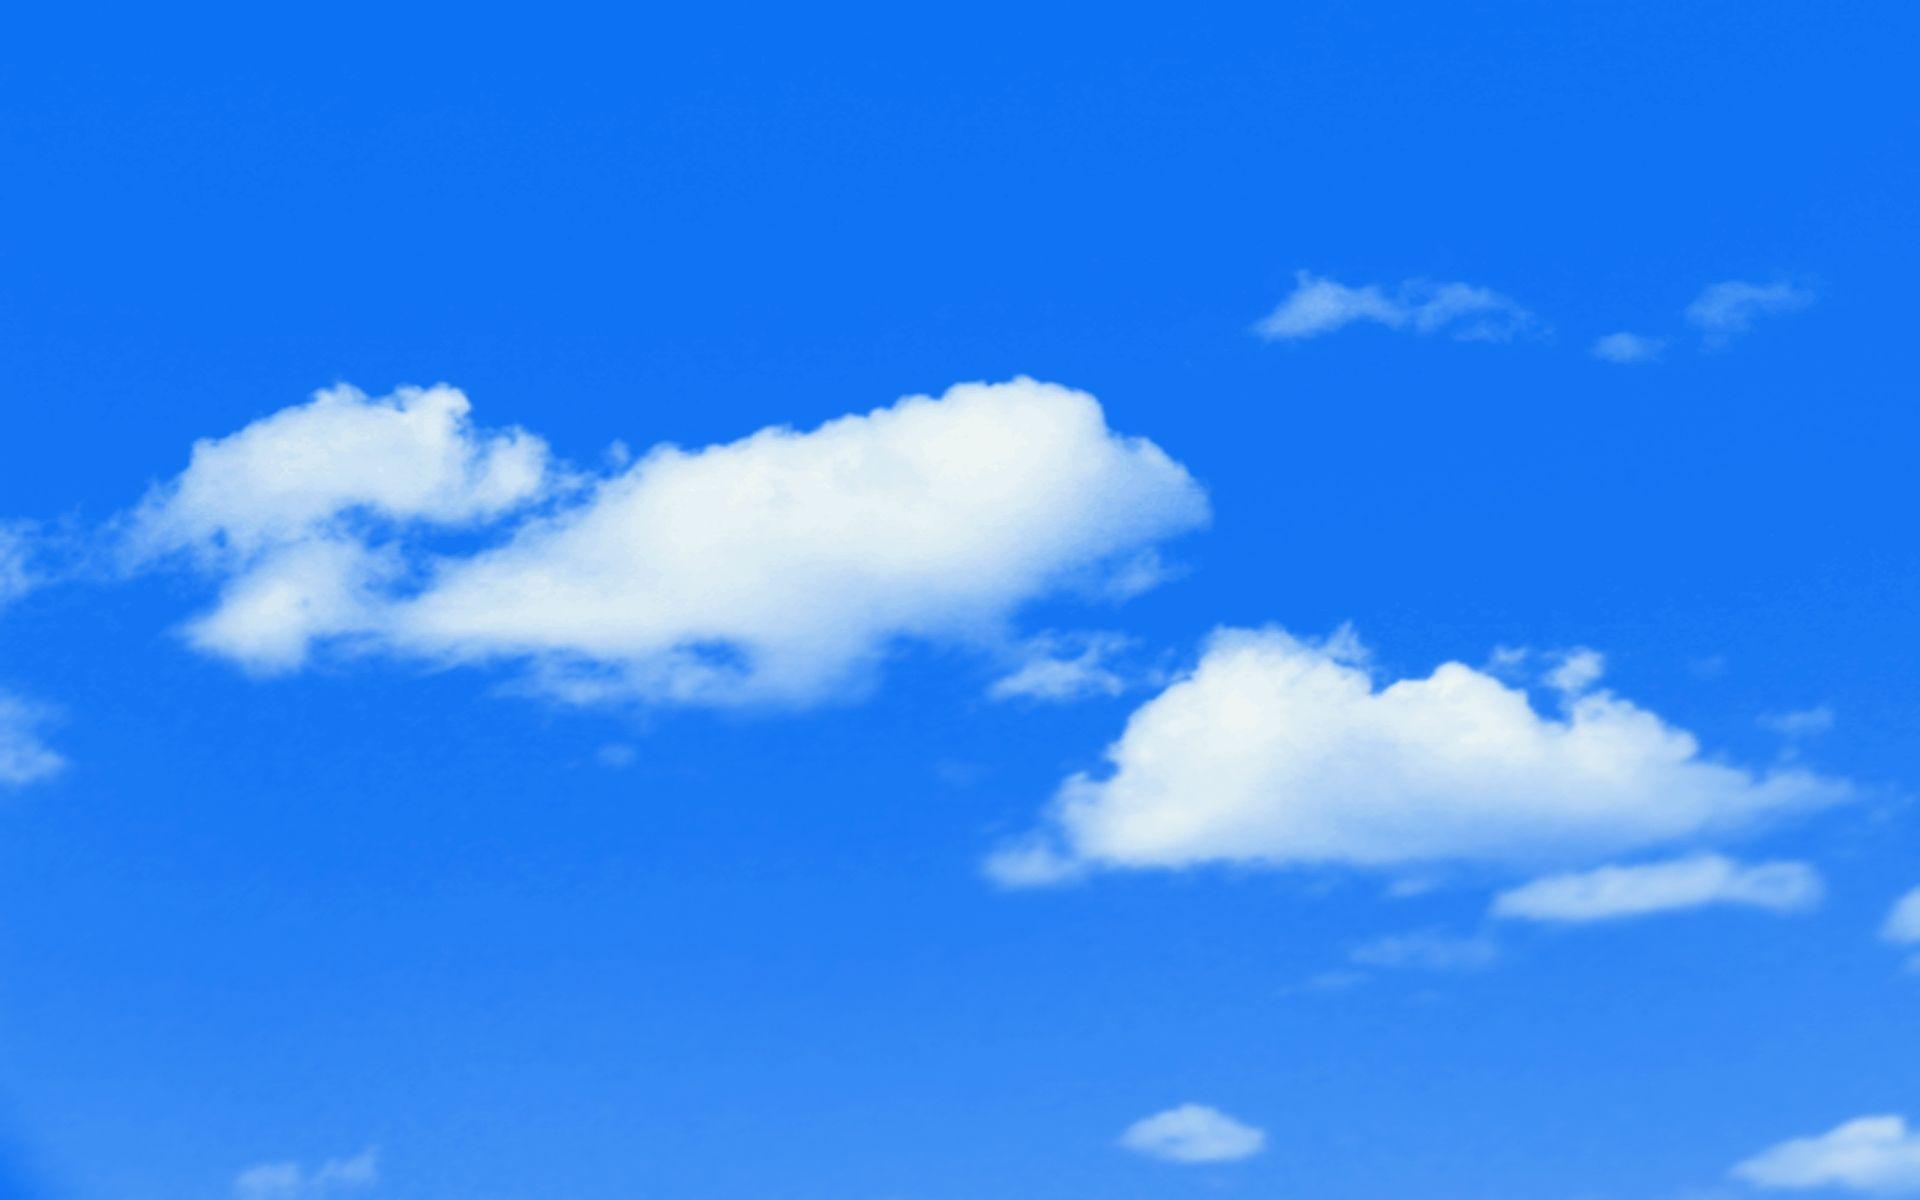 HD Widescreen Wallpaper: Blue Sky Wallpaper, Blue Sky Wallpaper